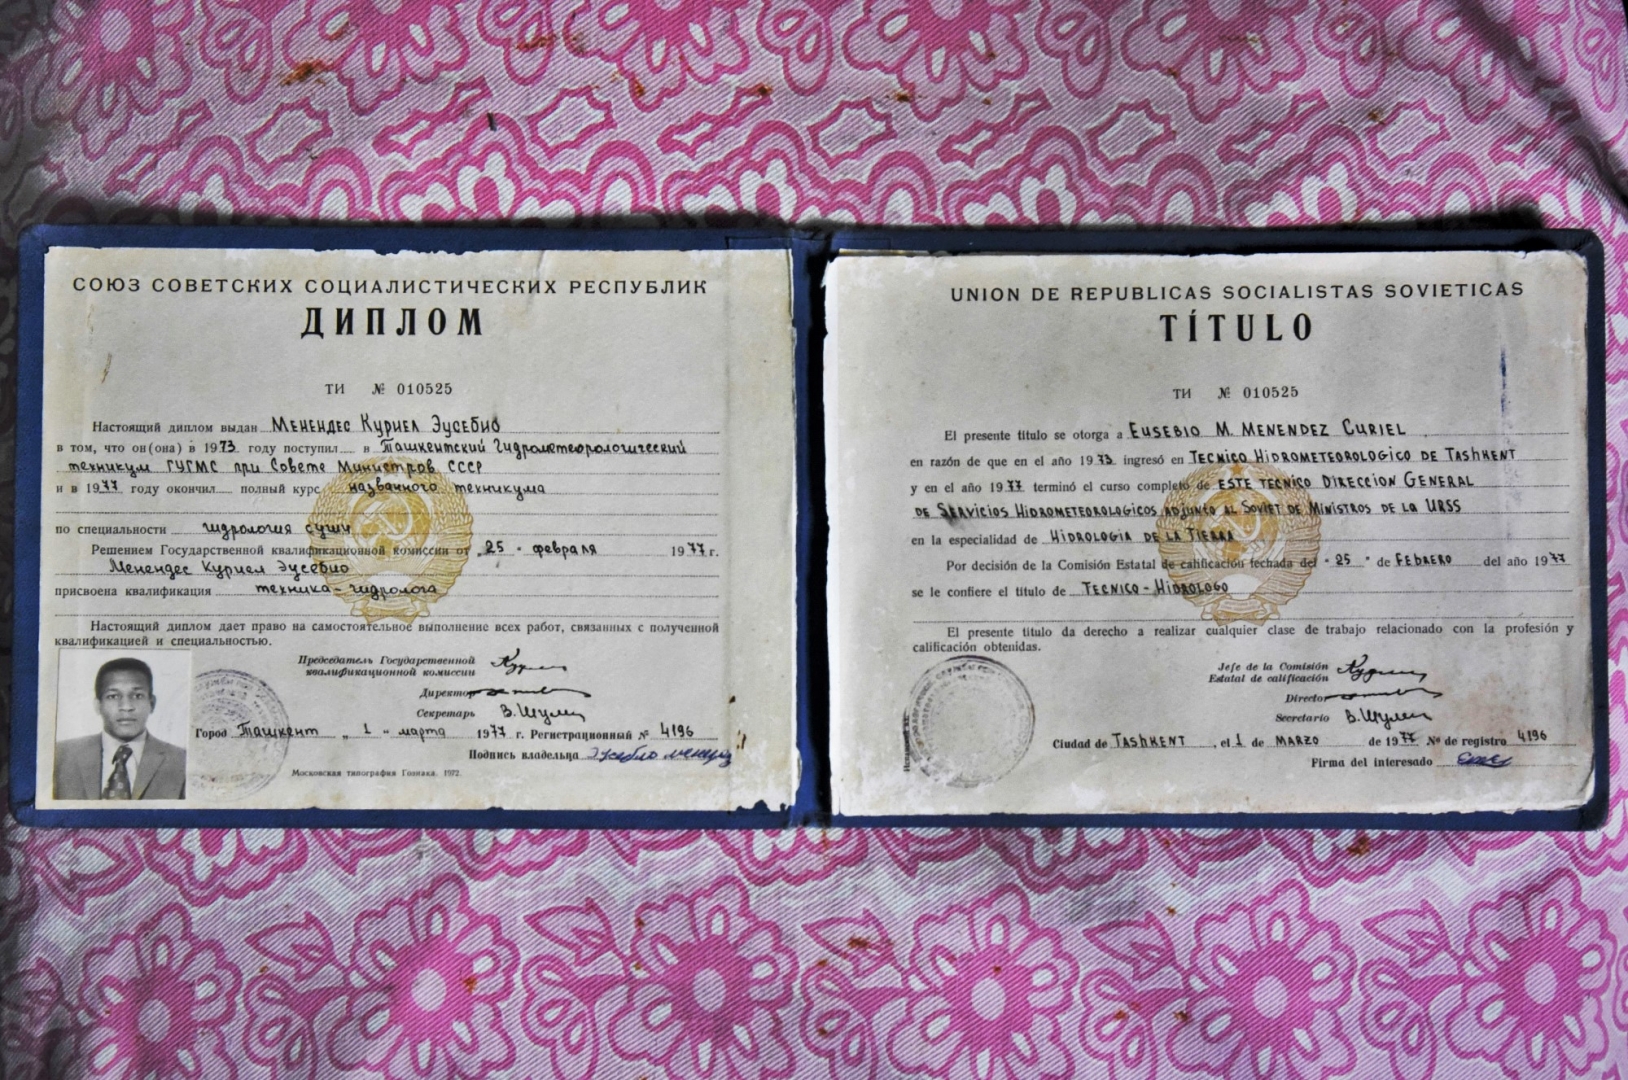 Диплом об окончании Ташкентского гидрометеорологического техникума, с присвоением квалификации техника-гидролога